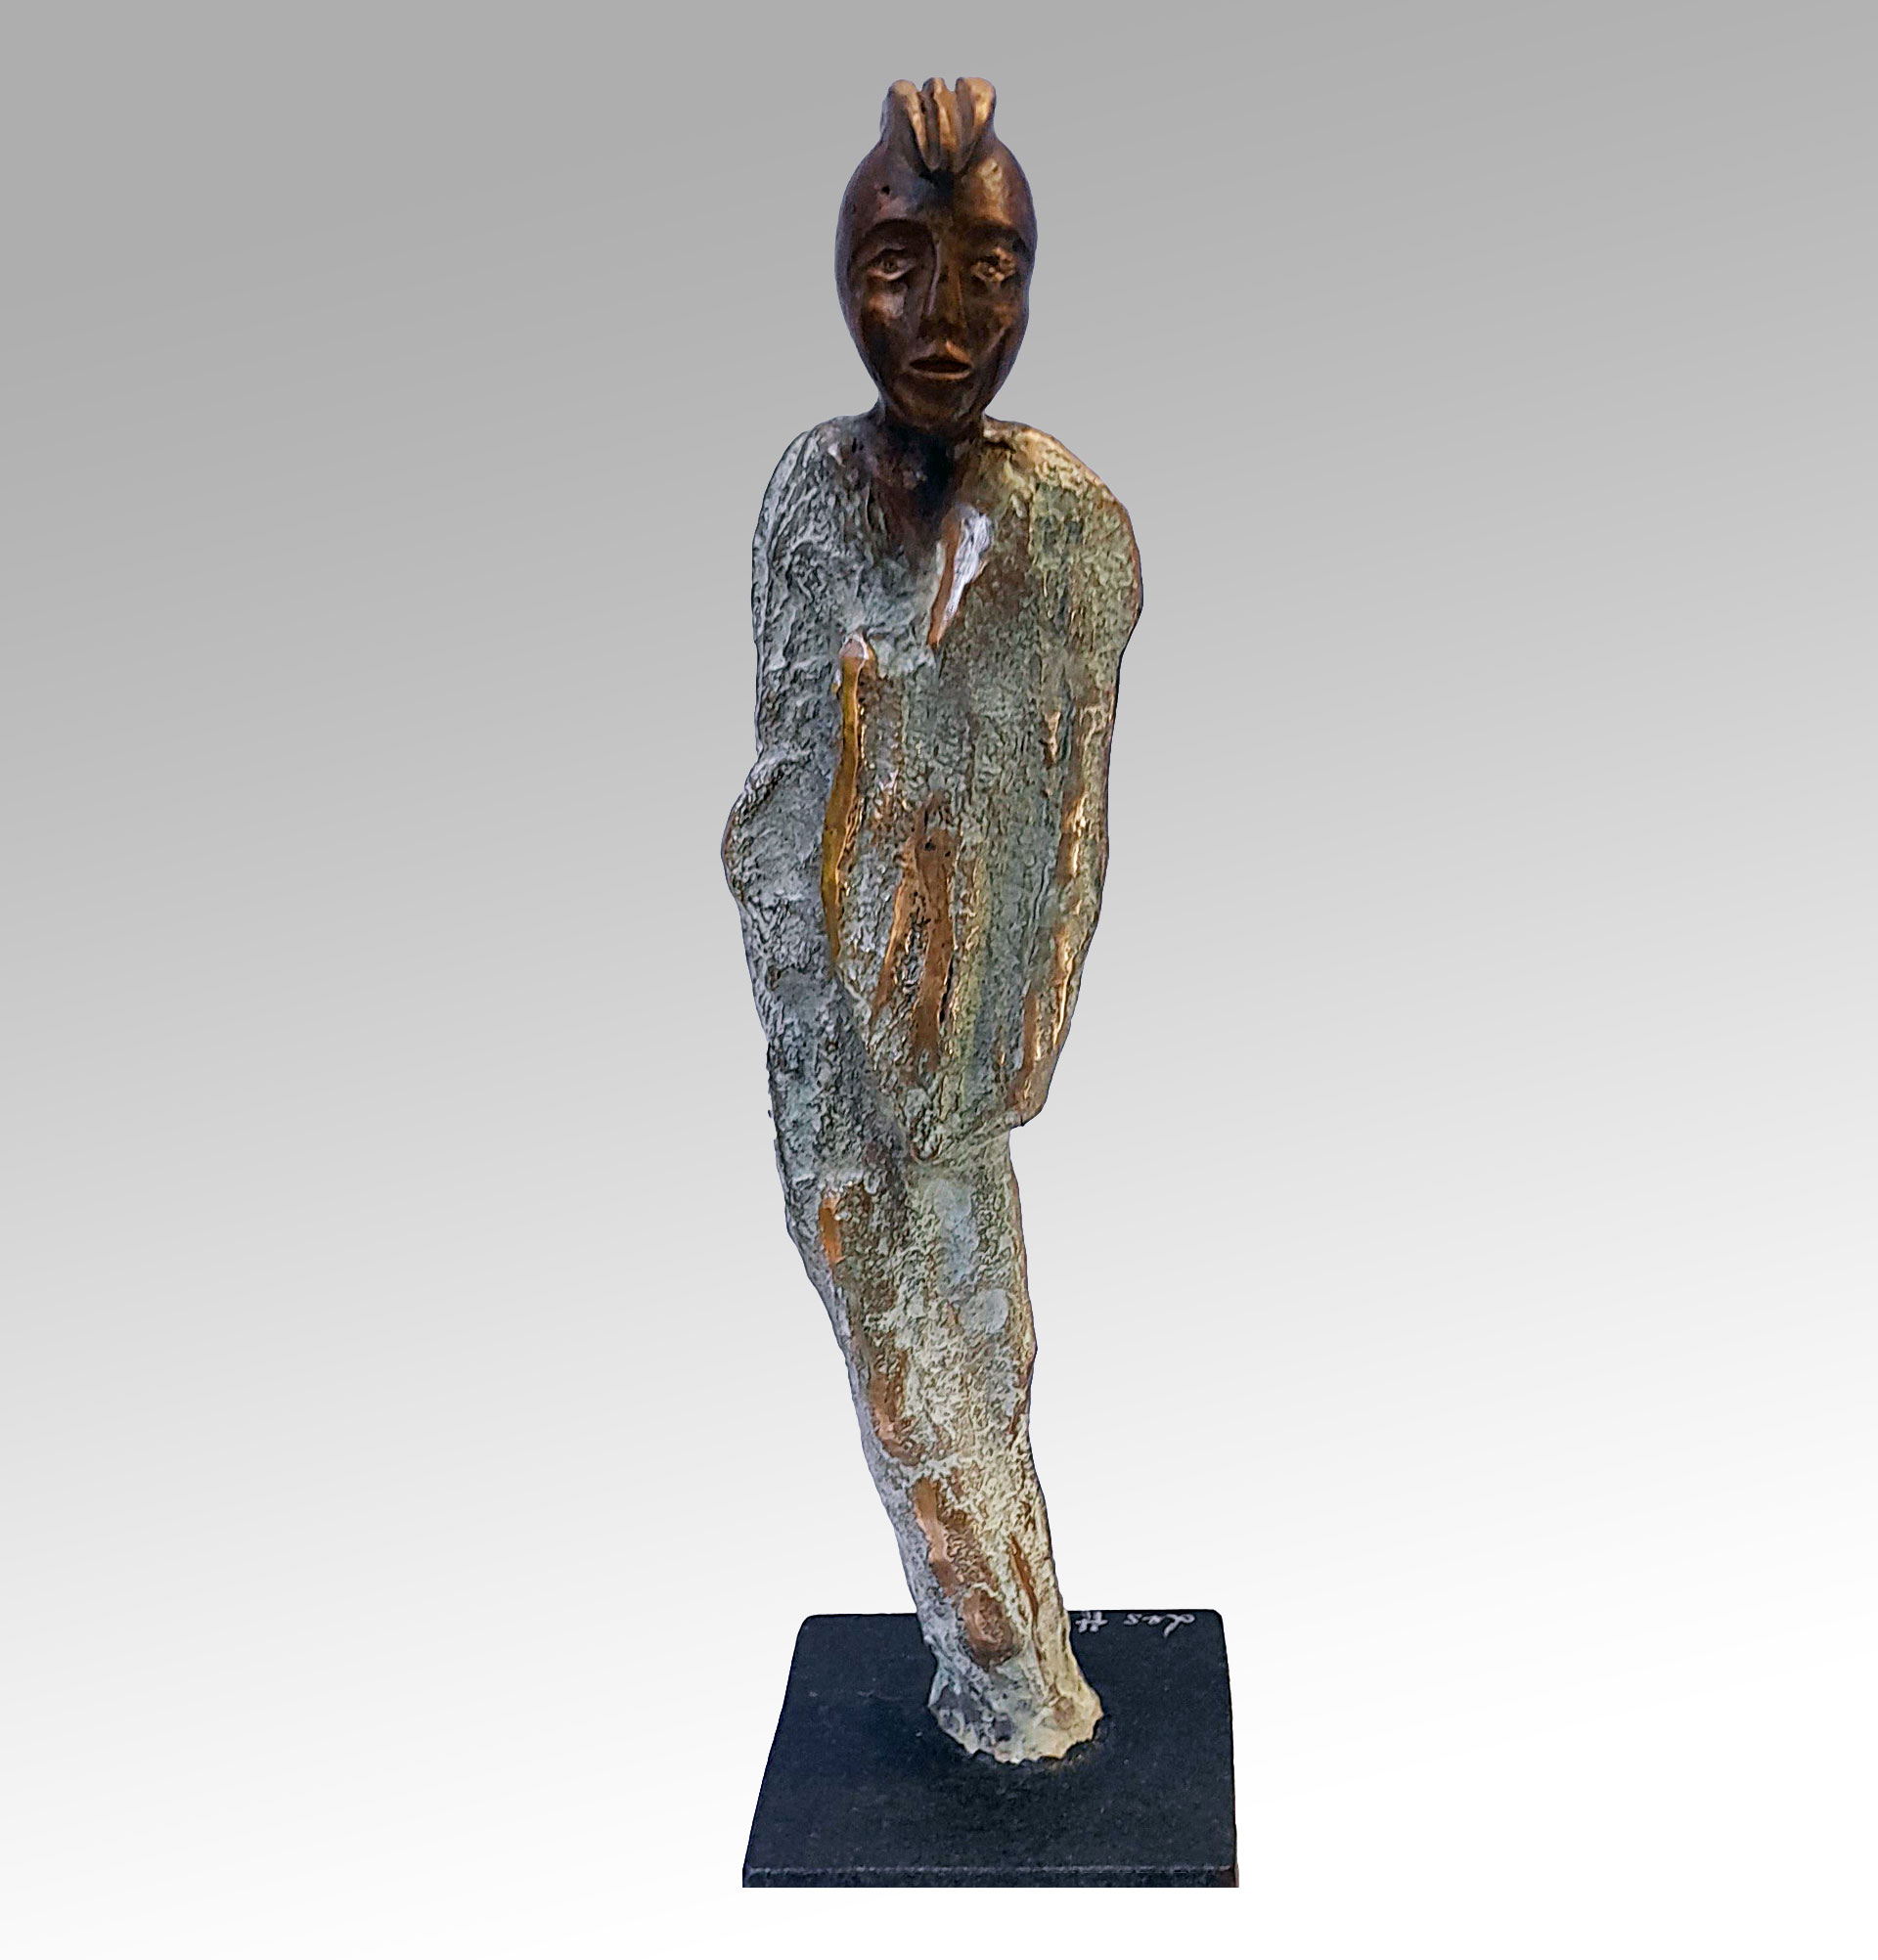 Sculpture bronze Contemporaine -statue homme- créée par Les Hélènes-sculpture Antibes - Pièce unique